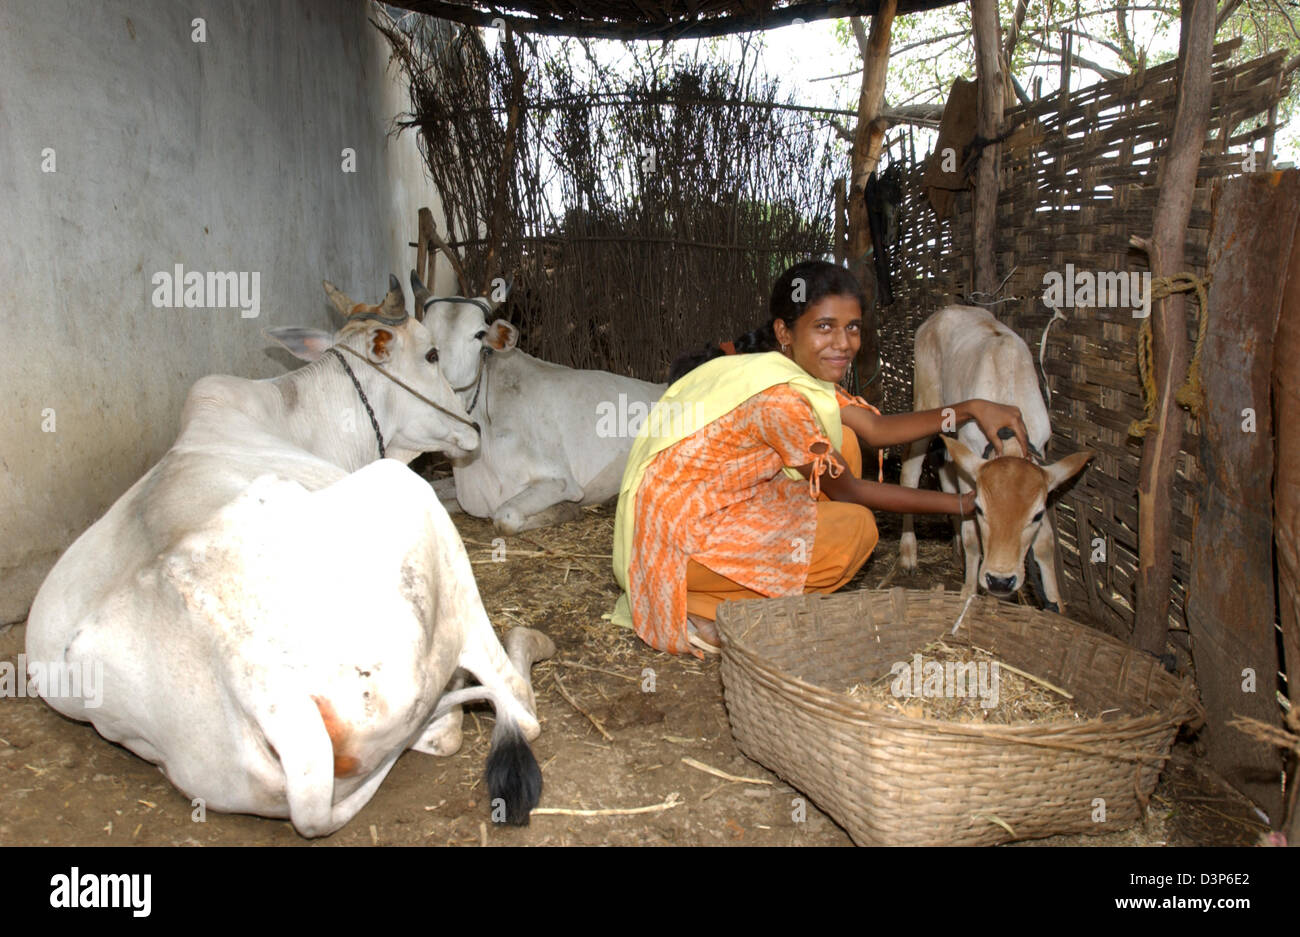 (Dpa-Datei) - ein junges Mädchen streichelt ein Kälbchen, während zwei Kühe auf dem Boden in einem Kuhstall in einem abgelegenen Dorf Chandrapur in Indien, 2. Juli 2006 liegen. Foto: Wolfgang Langenstrassen Stockfoto